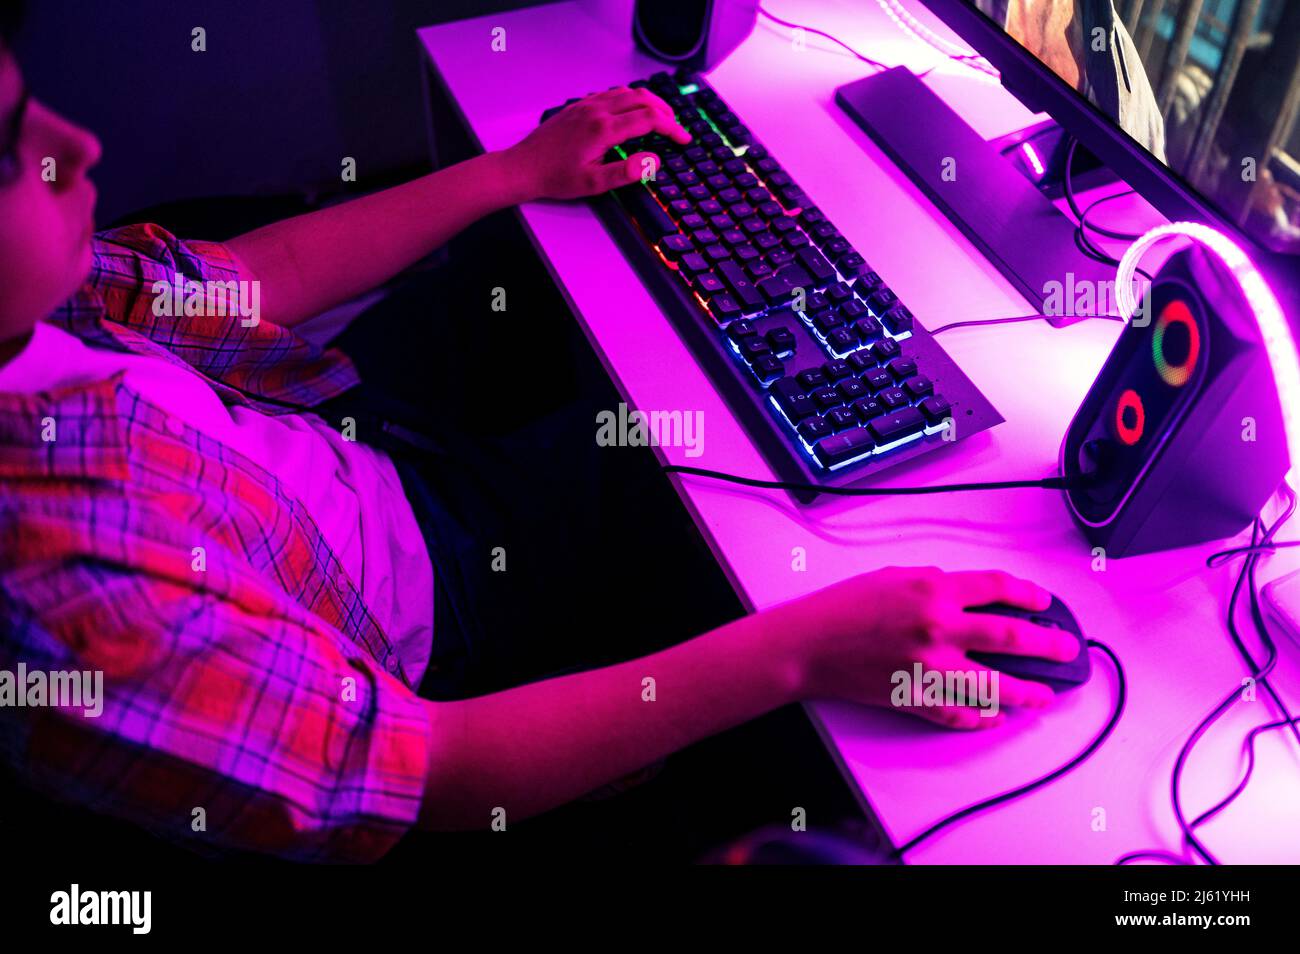 Junge spielt Videospiel auf dem Computer am Tisch Stockfoto